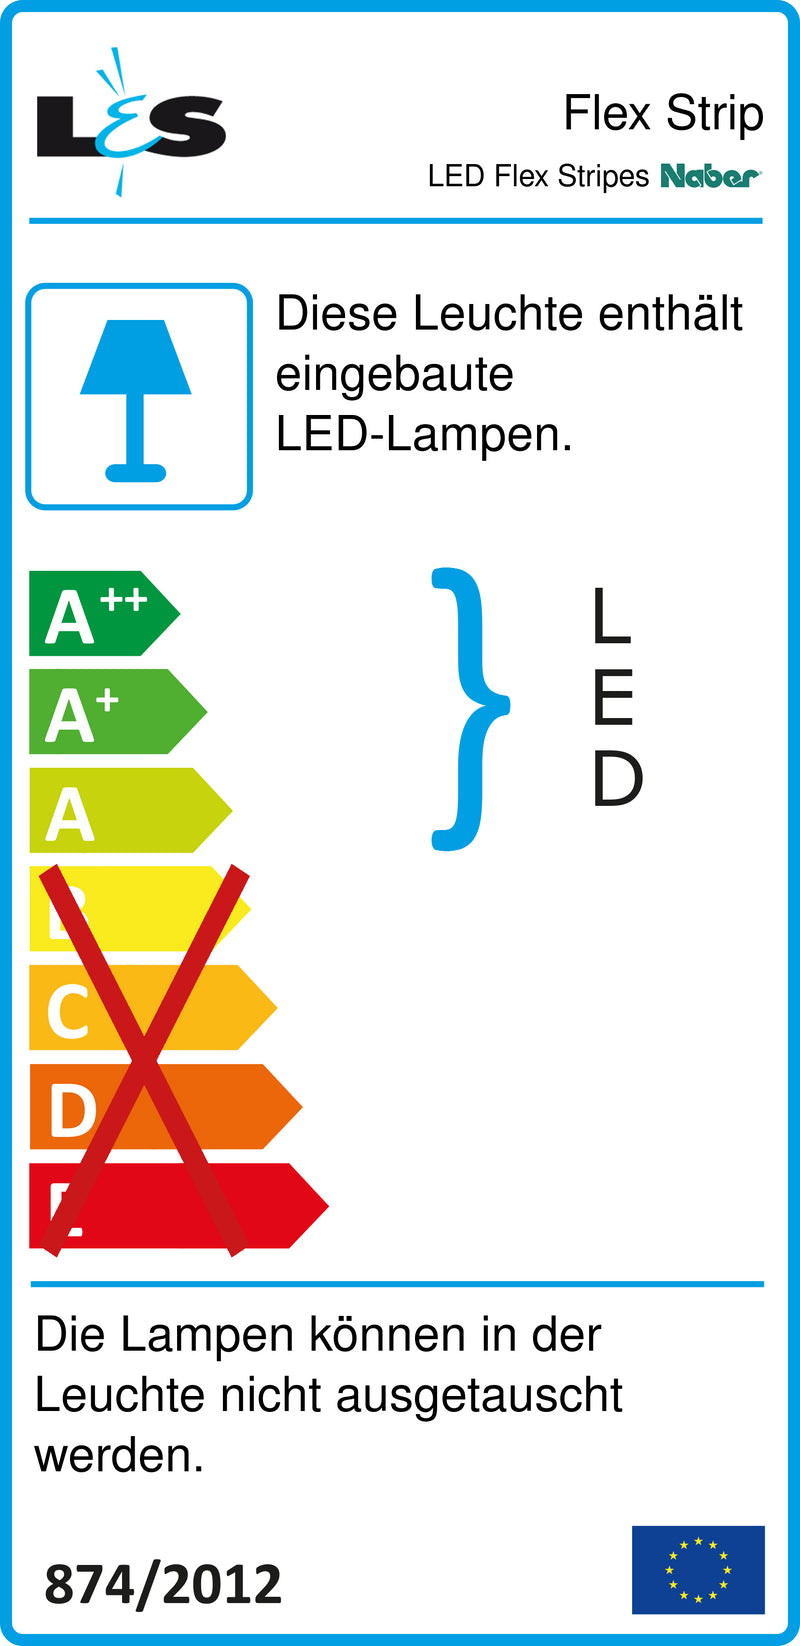 E-Label zu LED Flex Stripes als Variante schwarz von Naber GmbH in der Kategorie Lichttechnik in Österreich auf conceptshop.at